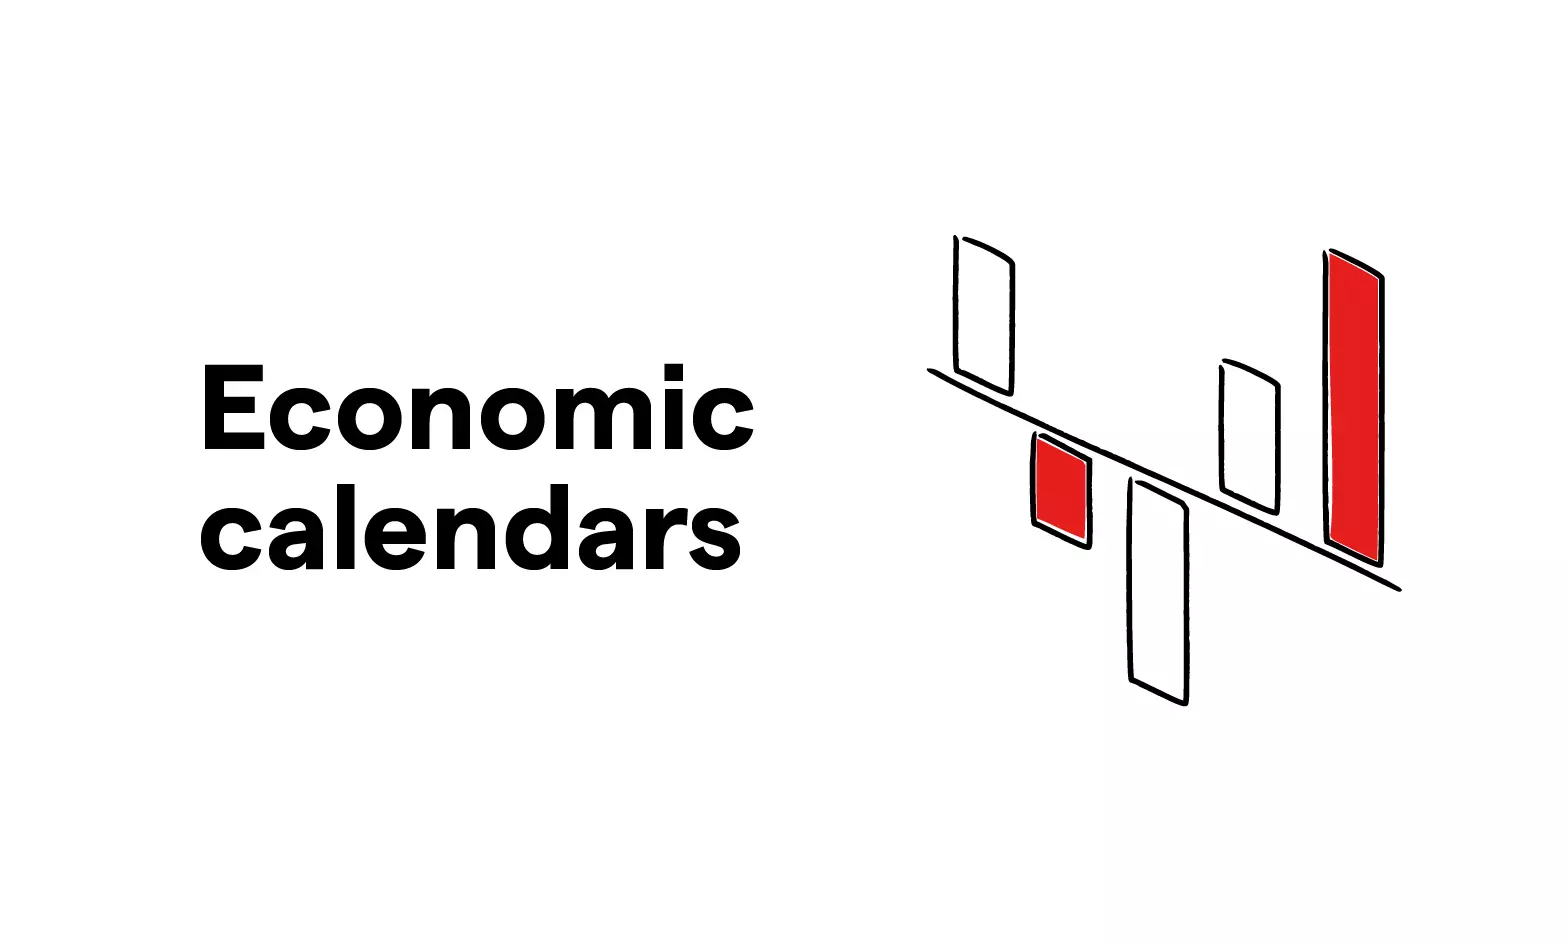 Economic calendars